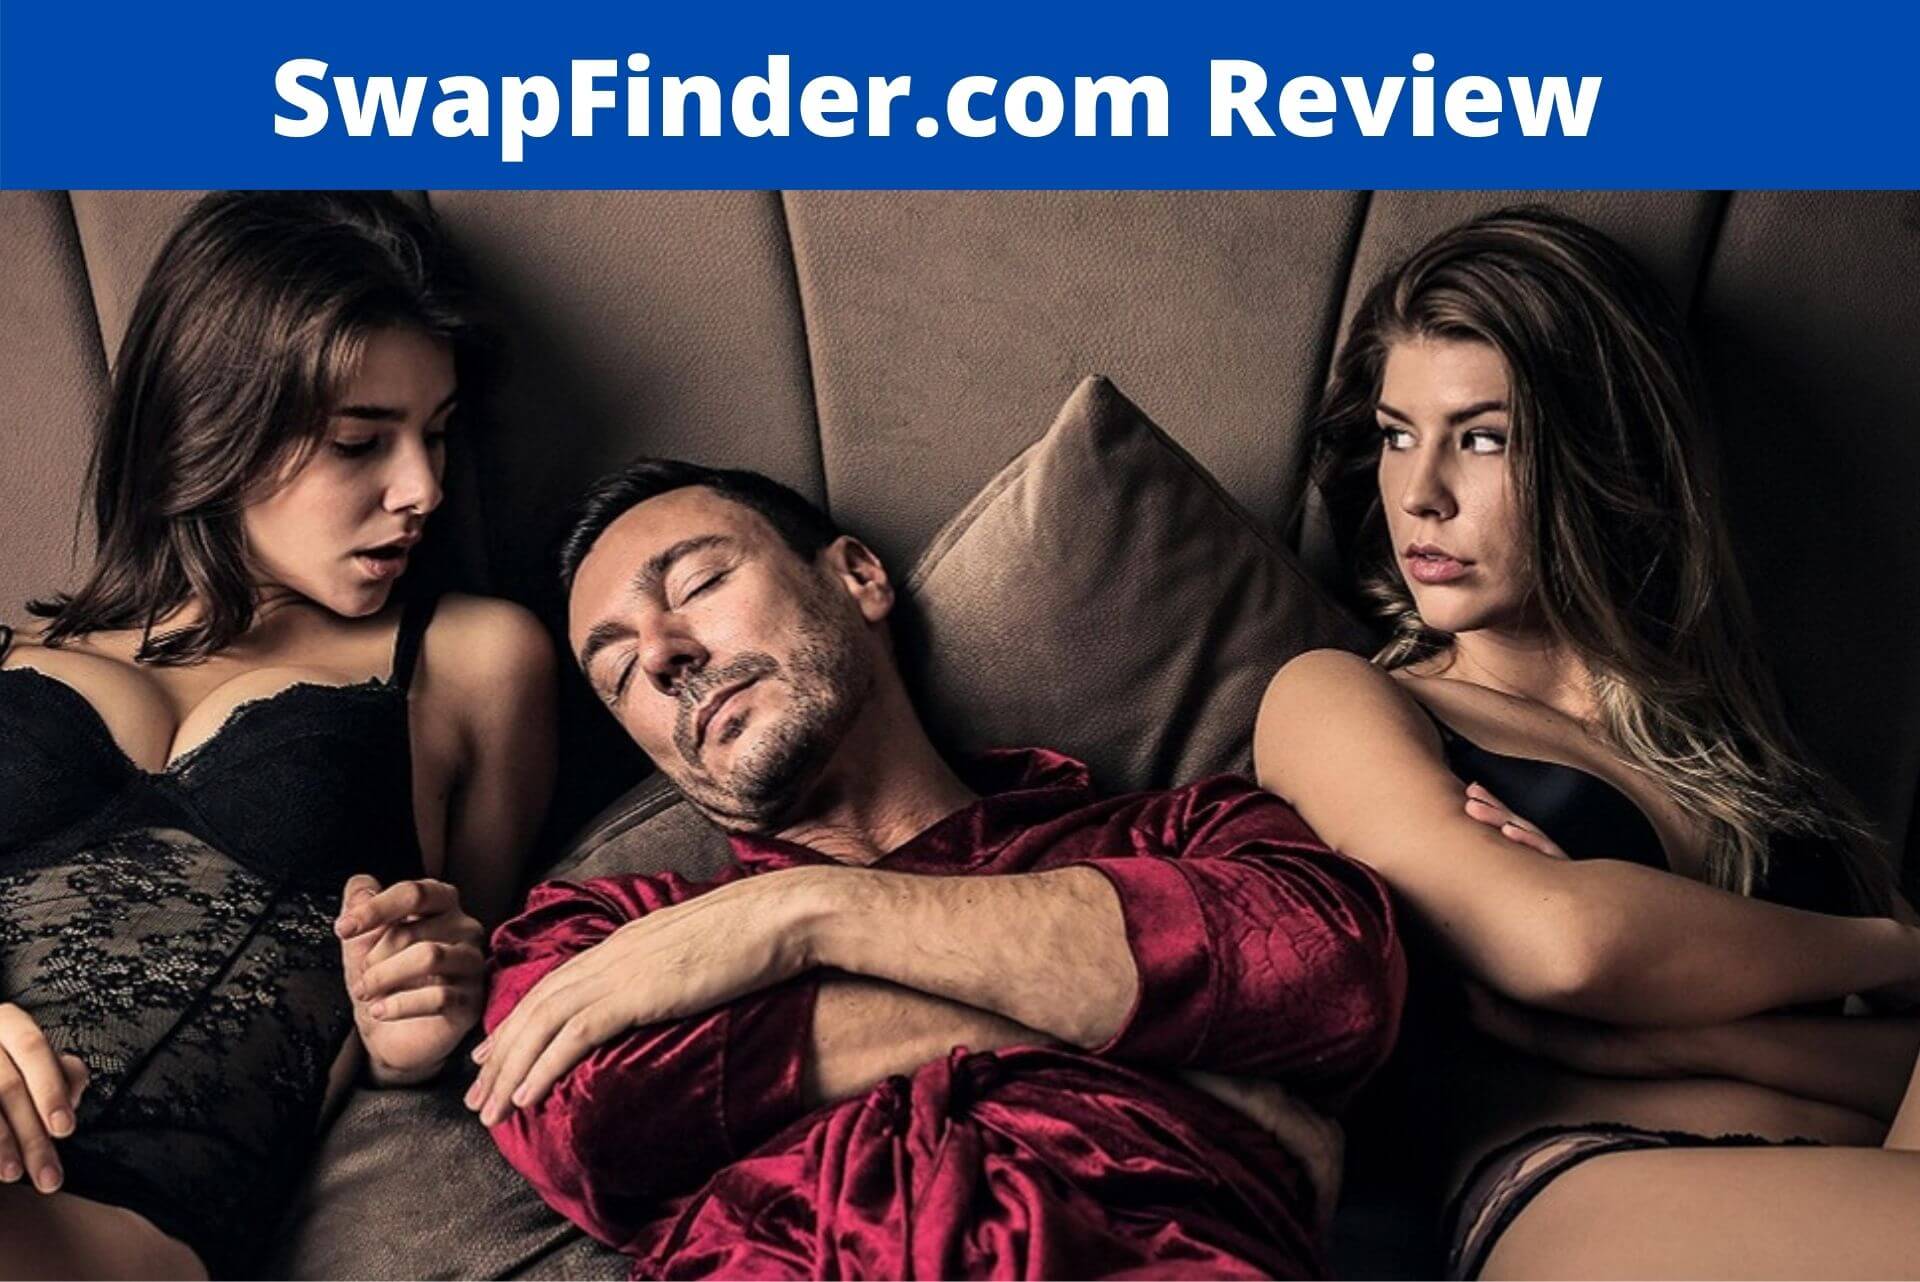 SwapFinder.com Review